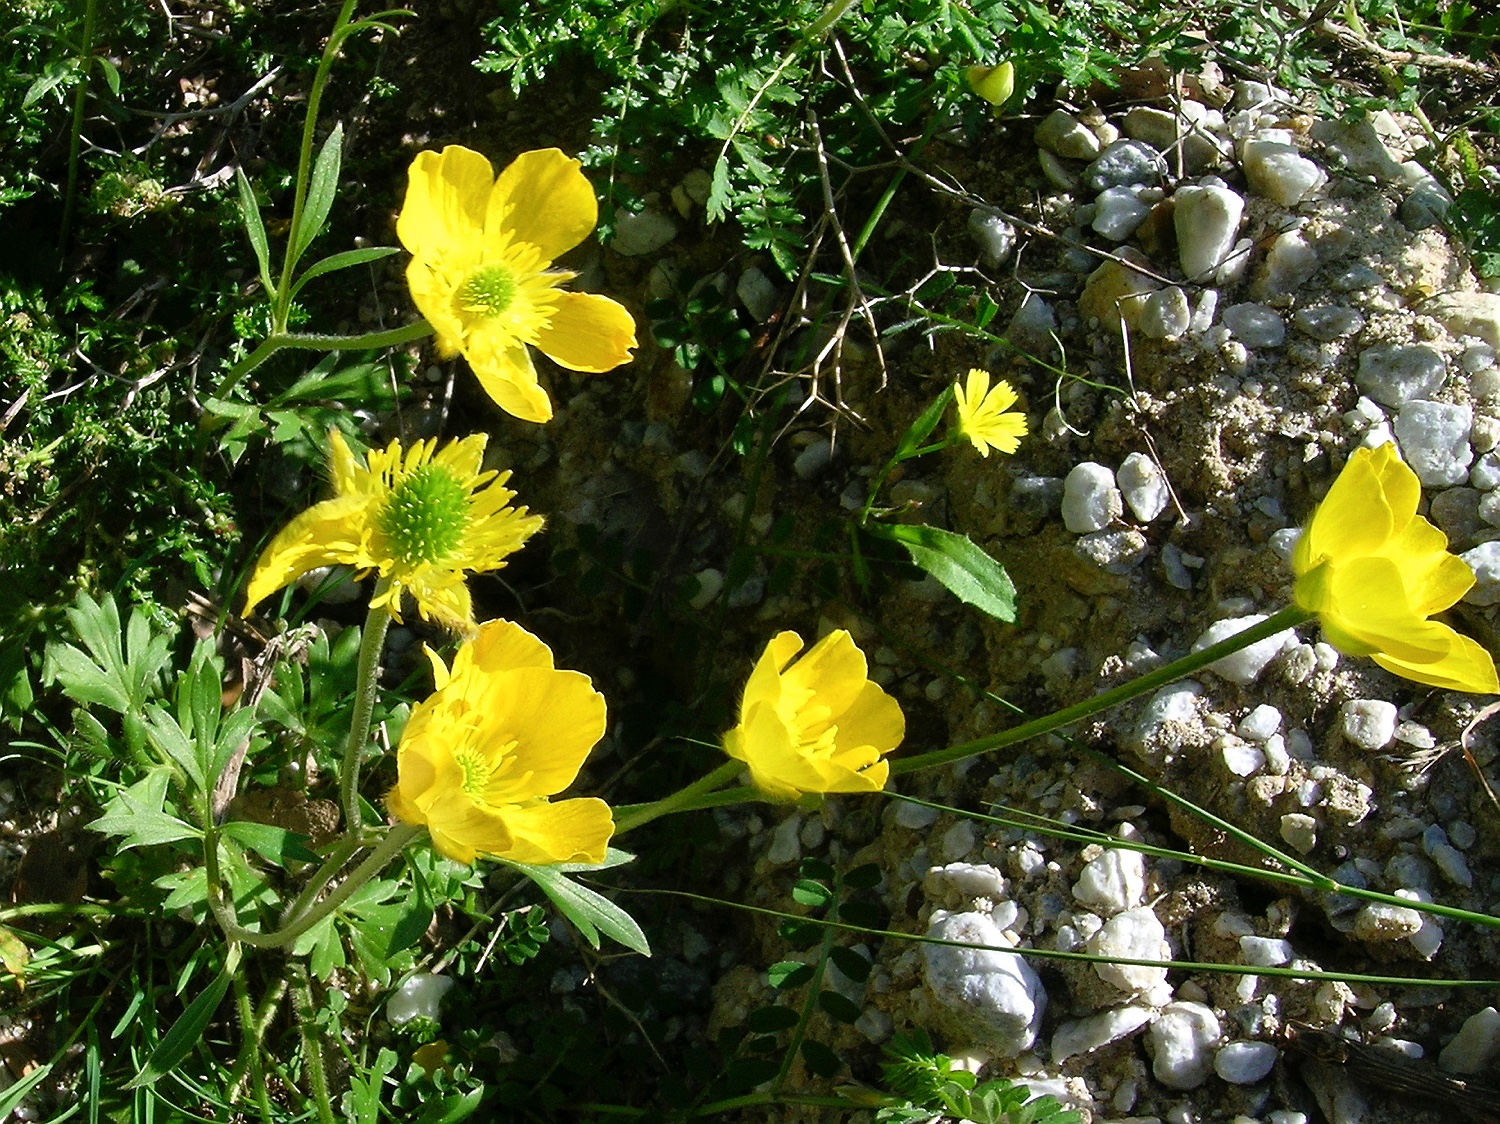 Ranunculus paludosus